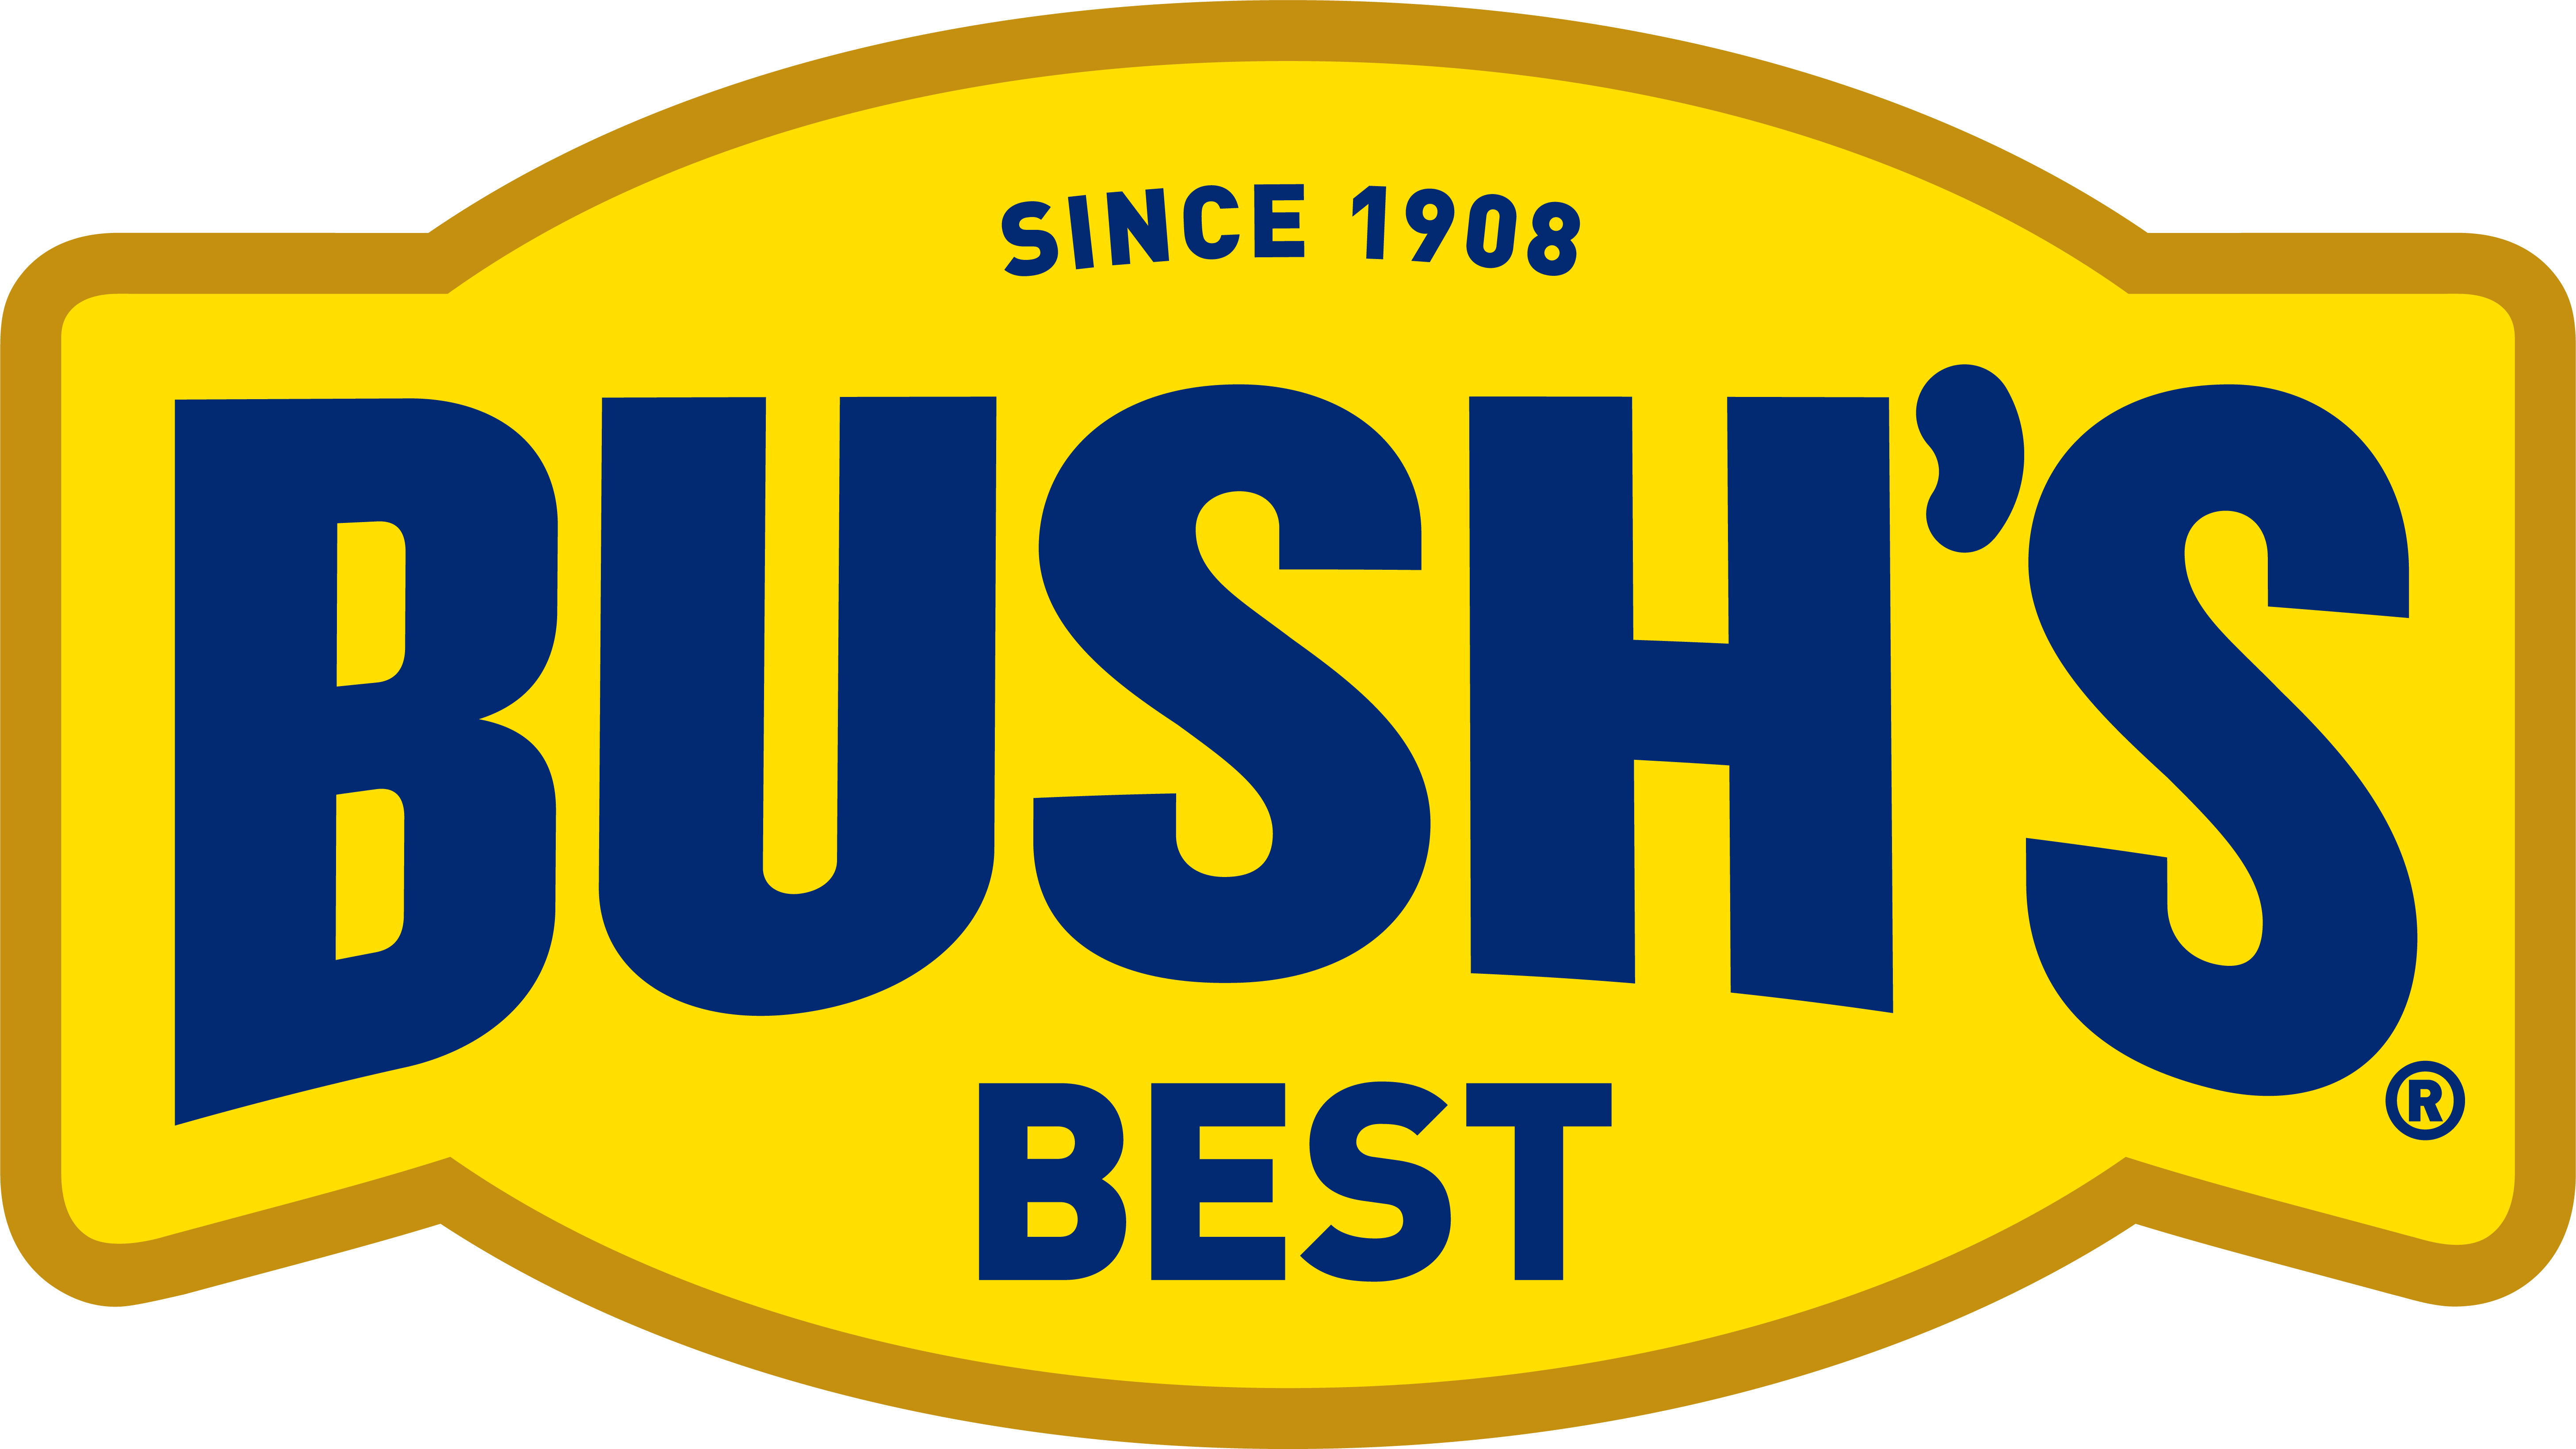 Bush's Beans Logo